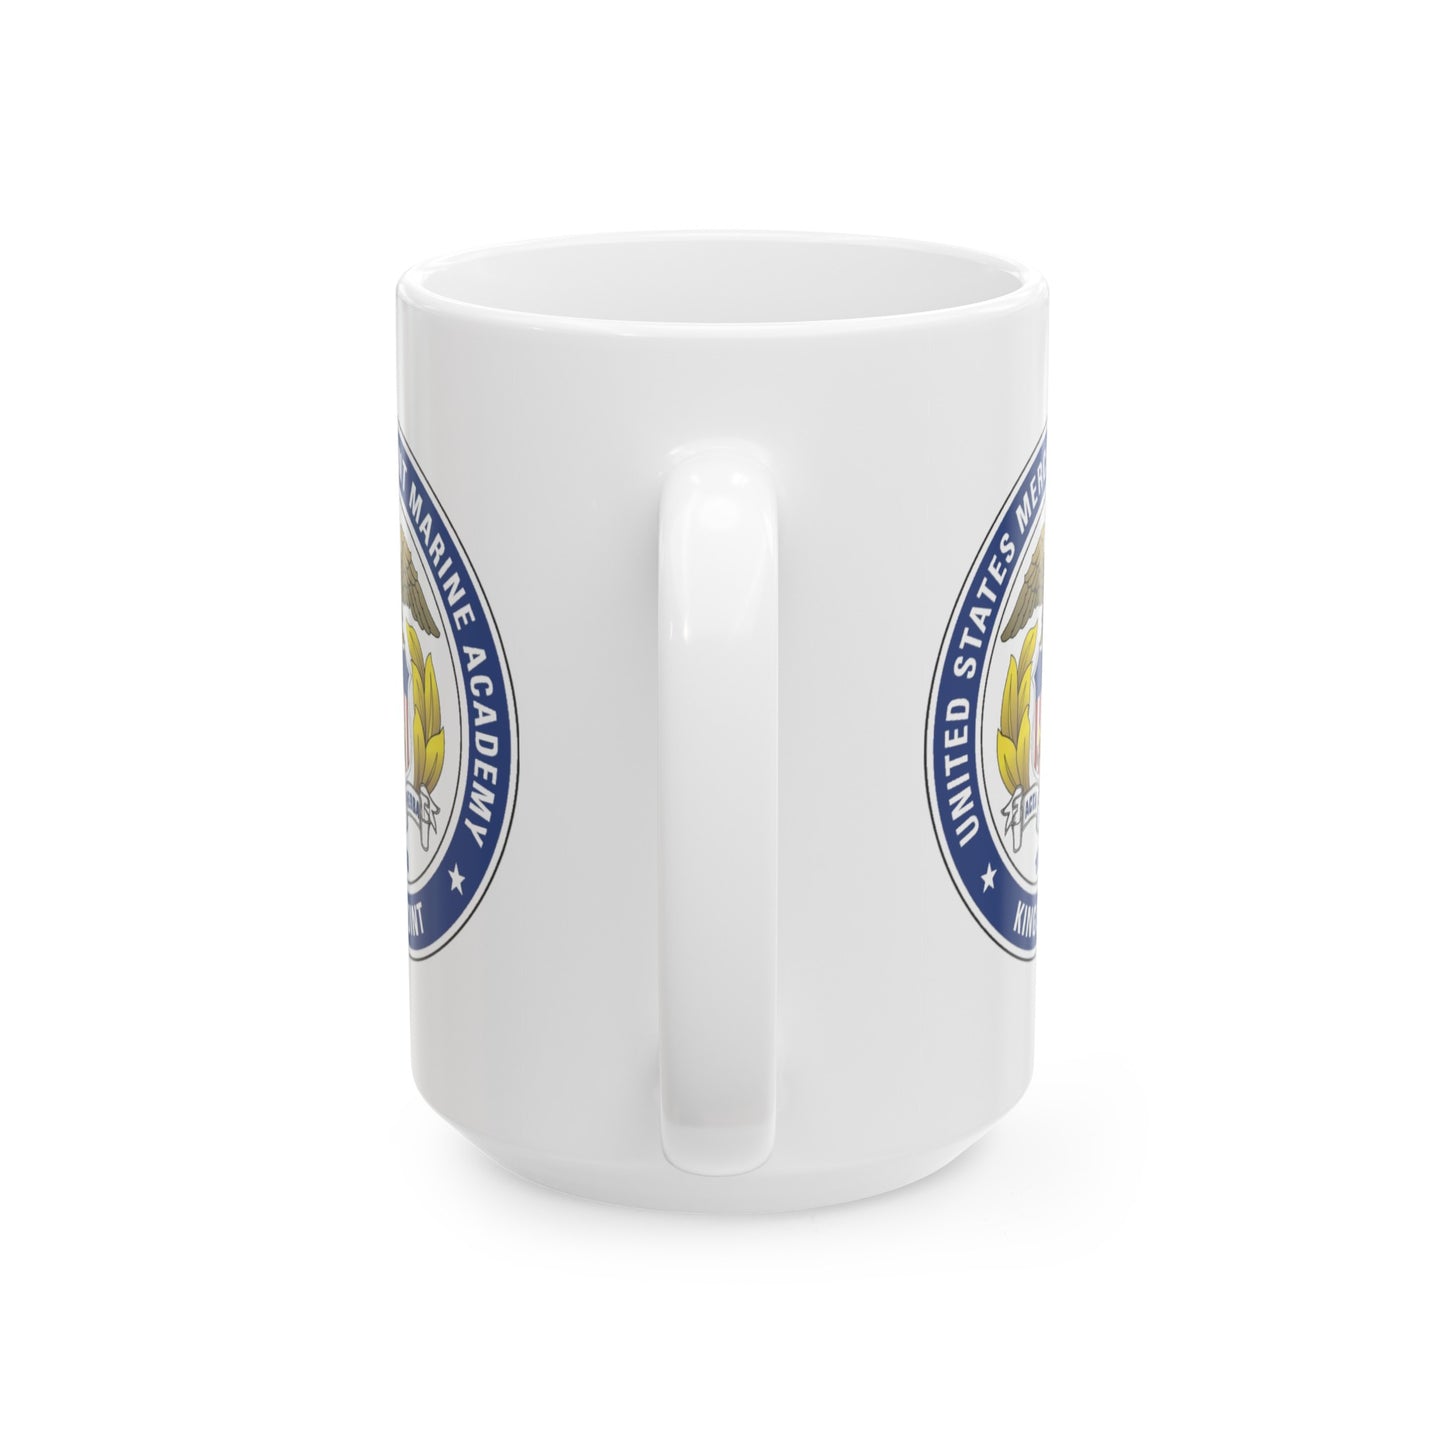 US Merchant Marine Academy Coffee Mug - Double Sided White Ceramic 15oz by TheGlassyLass.com